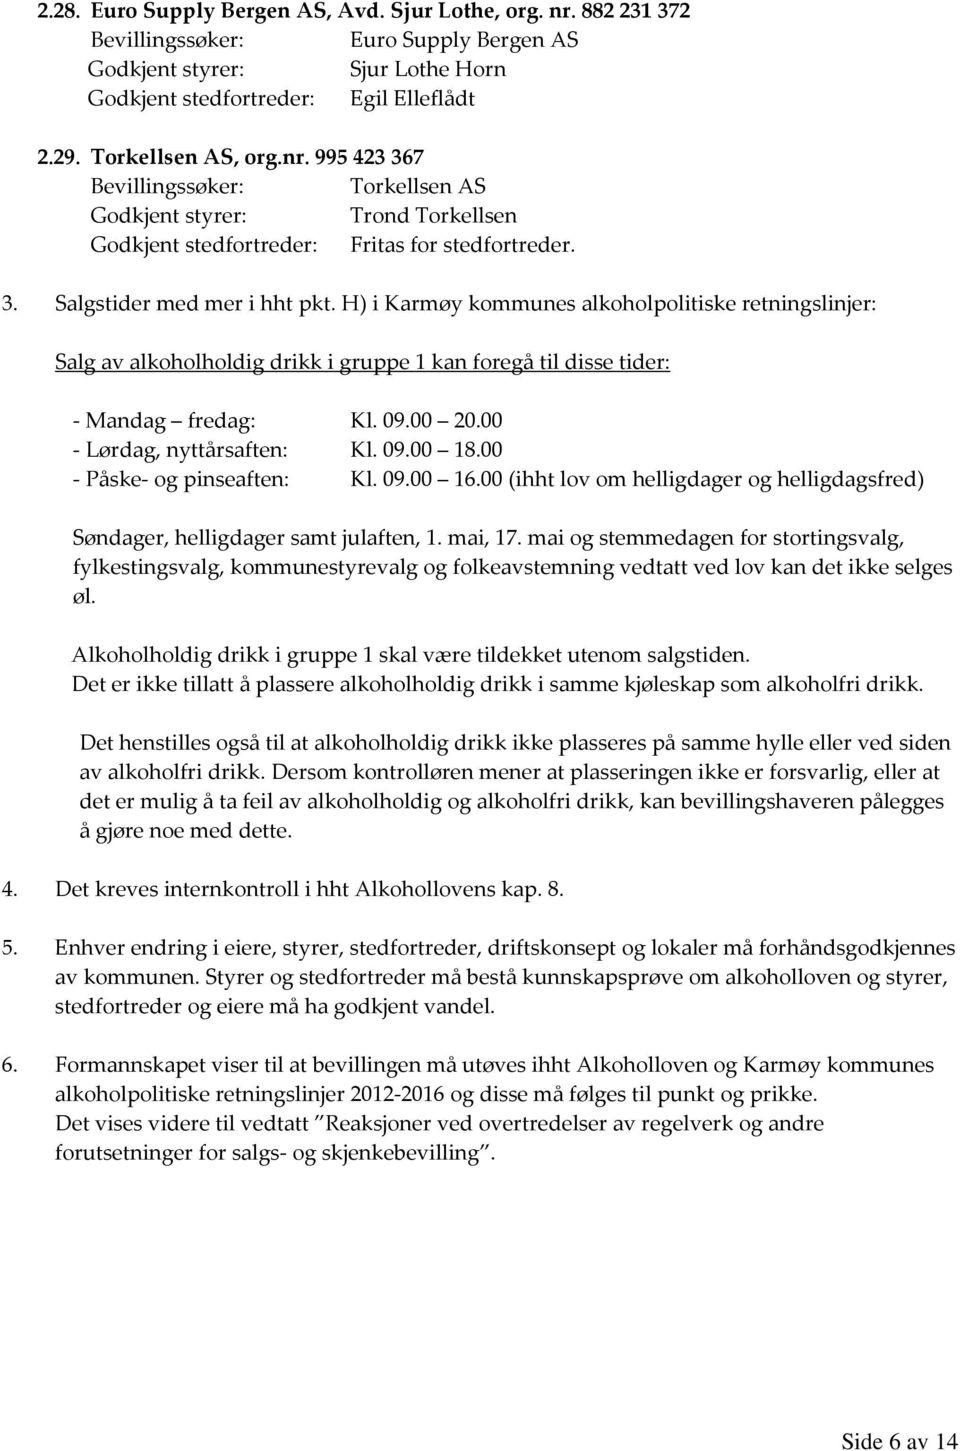 H) i Karmøy kommunes alkoholpolitiske retningslinjer: Salg av alkoholholdig drikk i gruppe 1 kan foregå til disse tider: - Mandag fredag: Kl. 09.00 20.00 - Lørdag, nyttårsaften: Kl. 09.00 18.